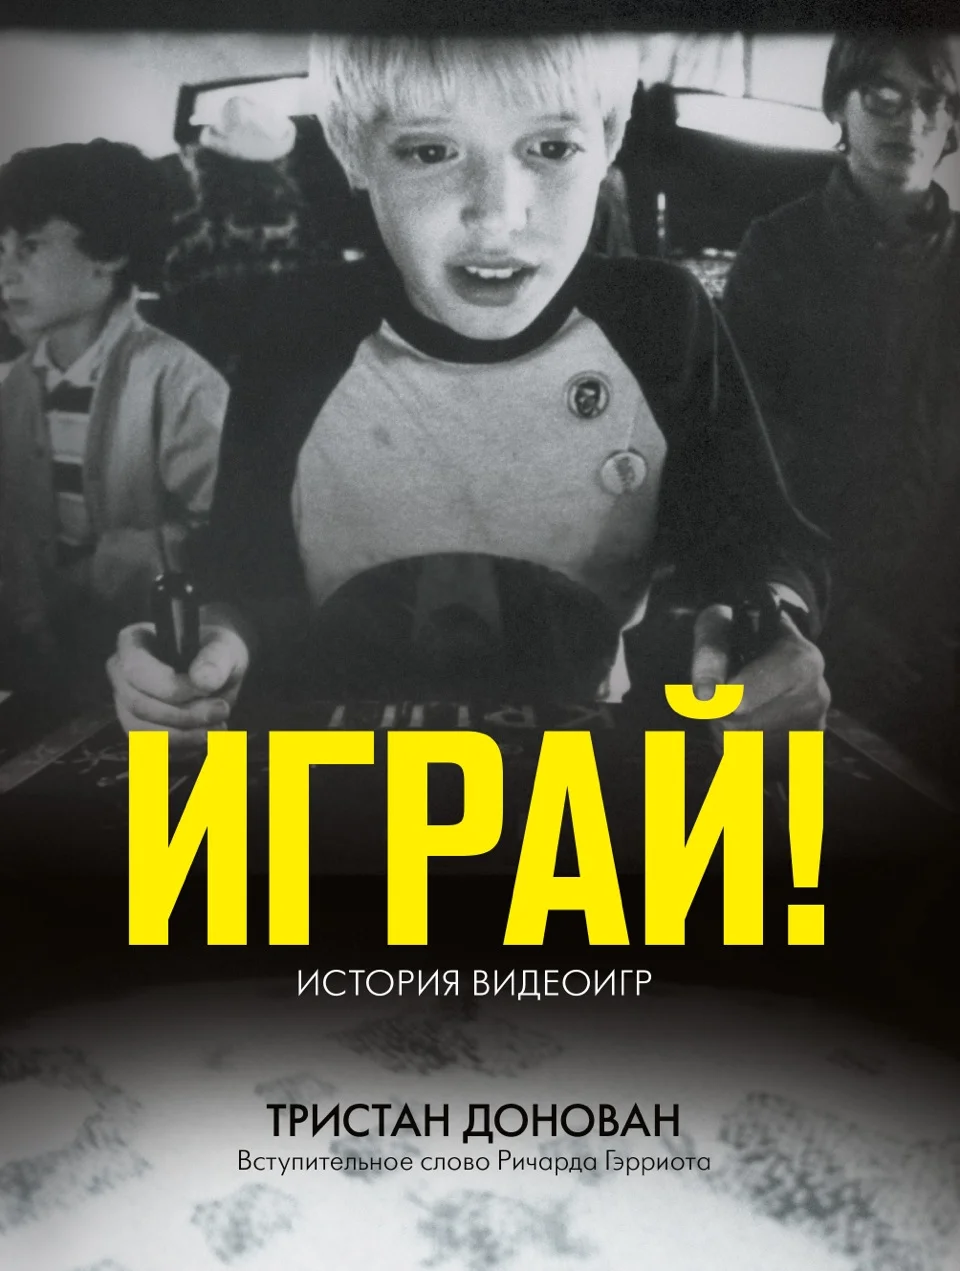 Книгу Replay об истории видеоигр переведут на русский язык через месяц - фото 1